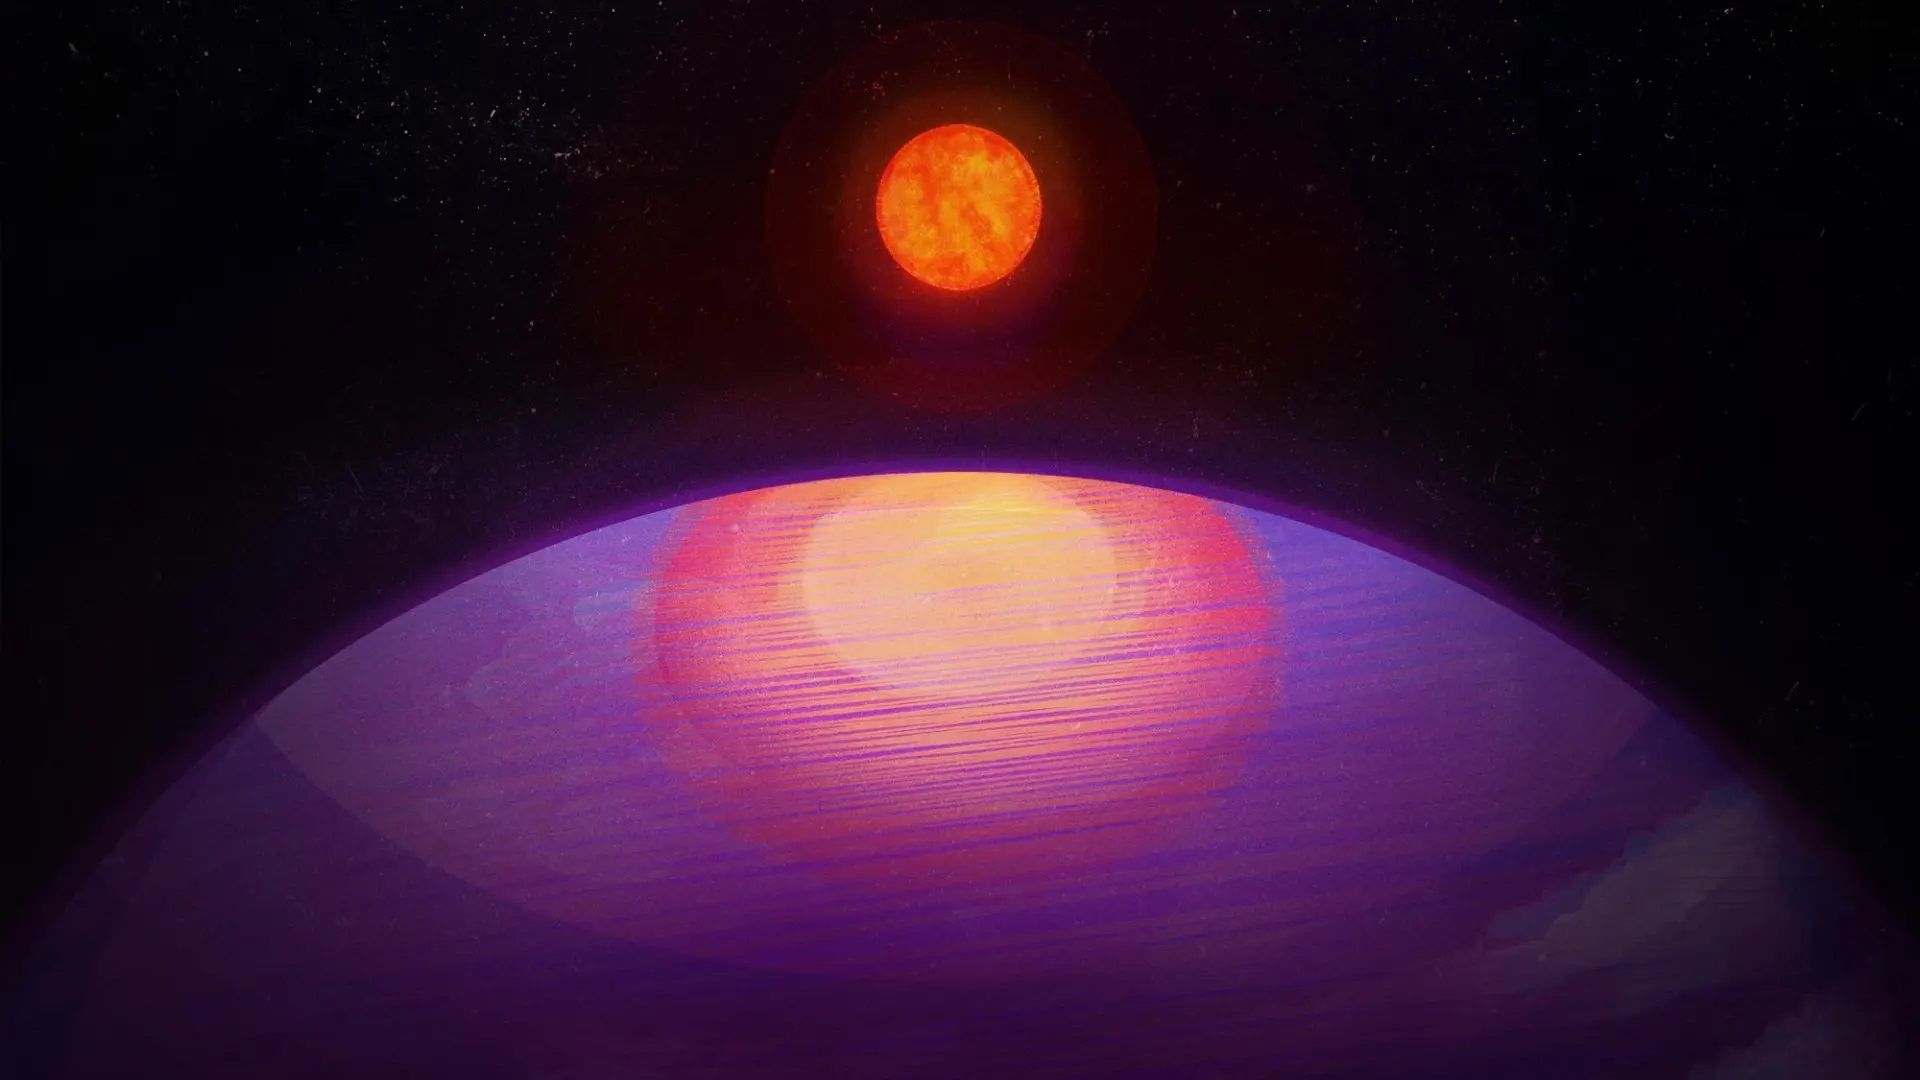 Representación artística de la posible vista desde LHS 3154b hacia su estrella anfitriona de baja masa. Dada su gran masa, LHS 3154b probablemente tiene una composición similar a Neptuno.